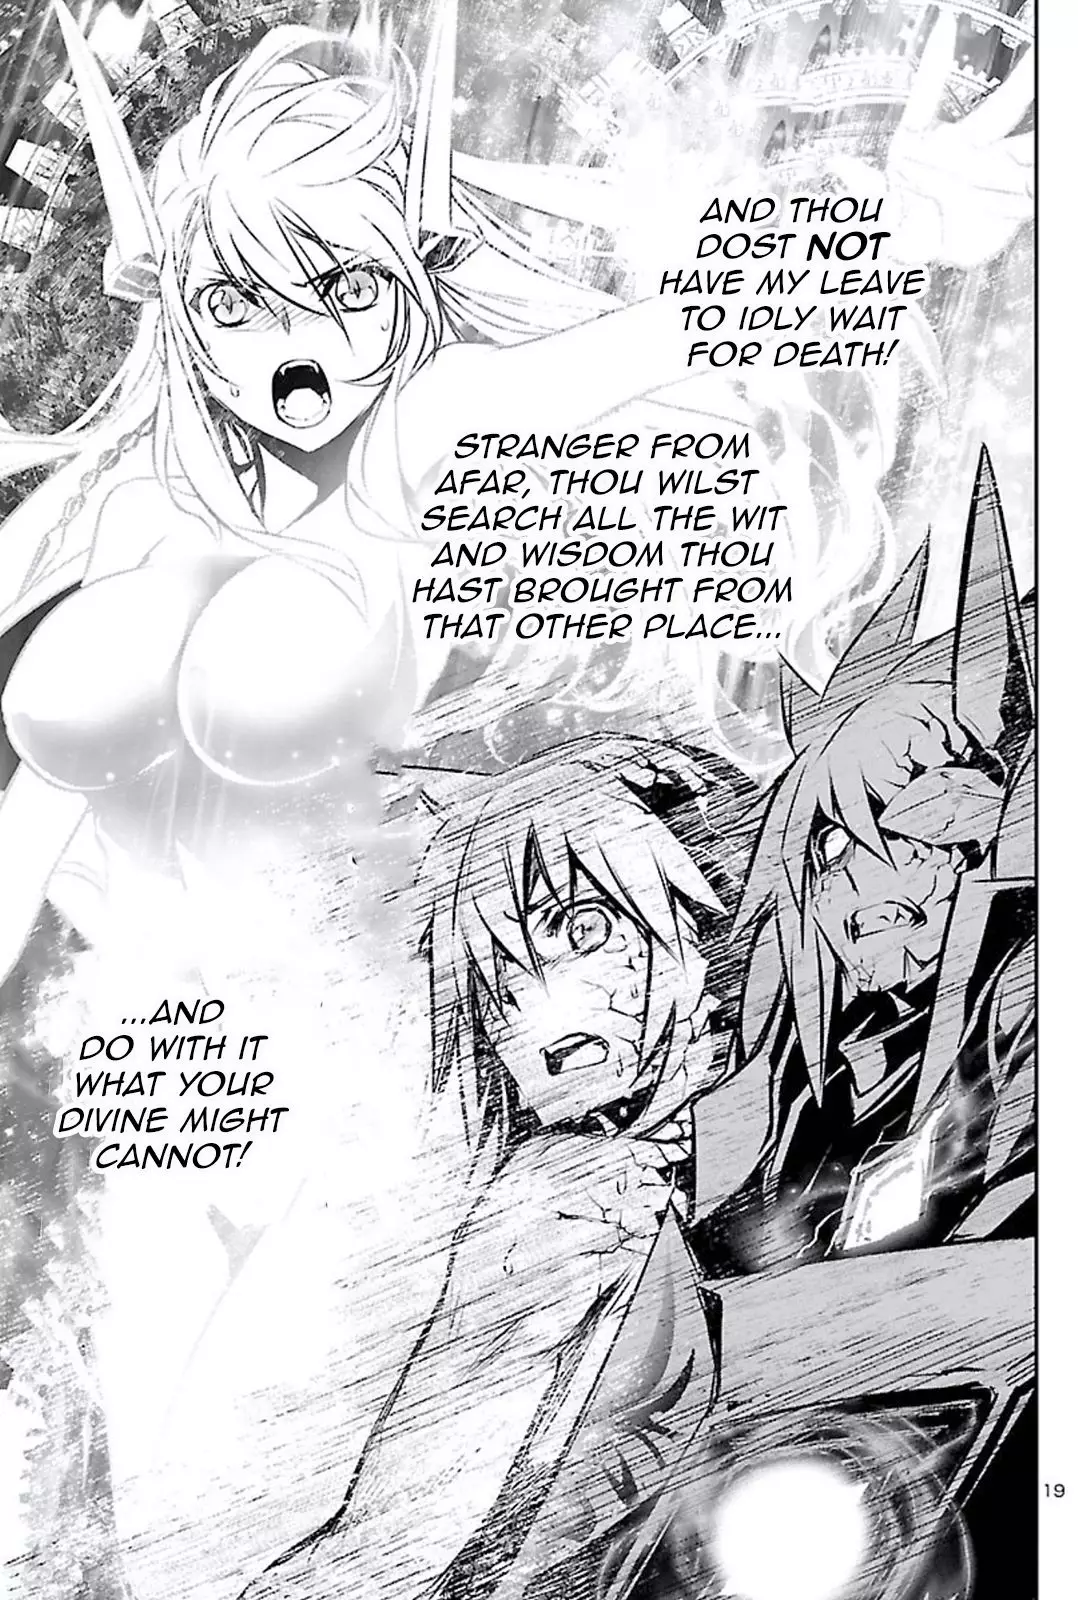 Shinju no Nectar - 47 page 19